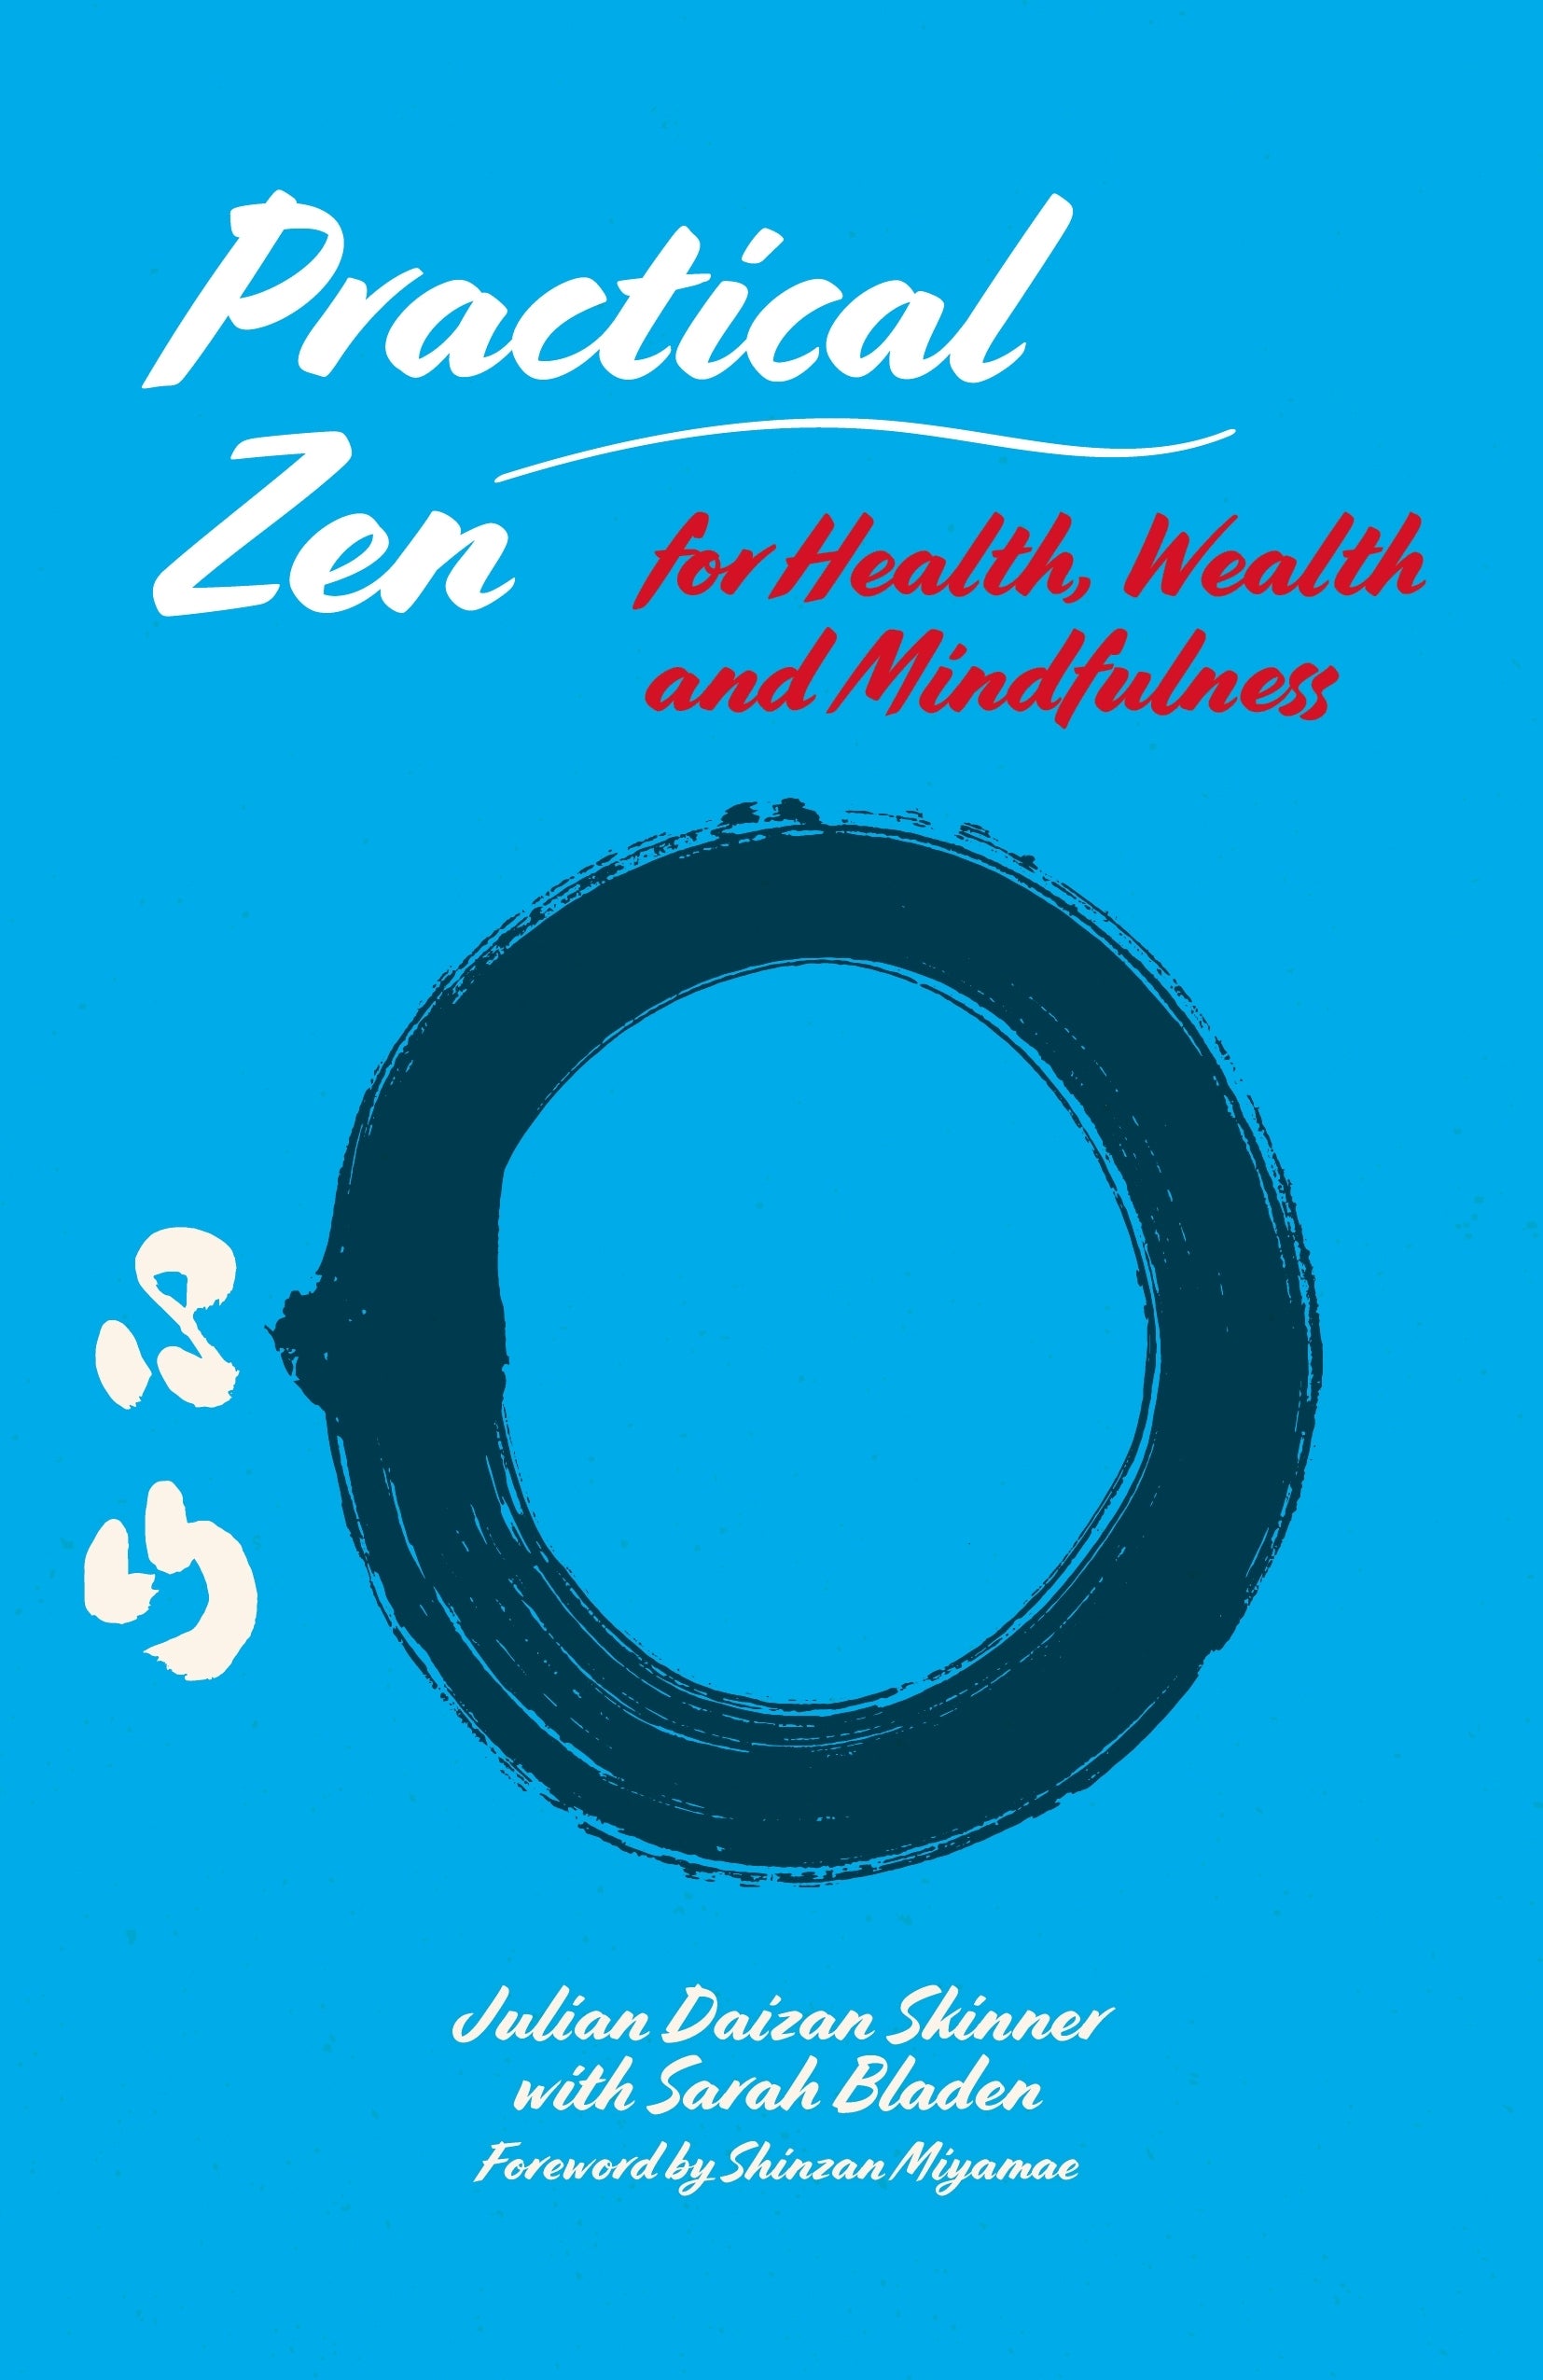 Practical Zen for Health, Wealth and Mindfulness by Julian Daizan Skinner, Shinzan Miyamae, Sarah Bladen